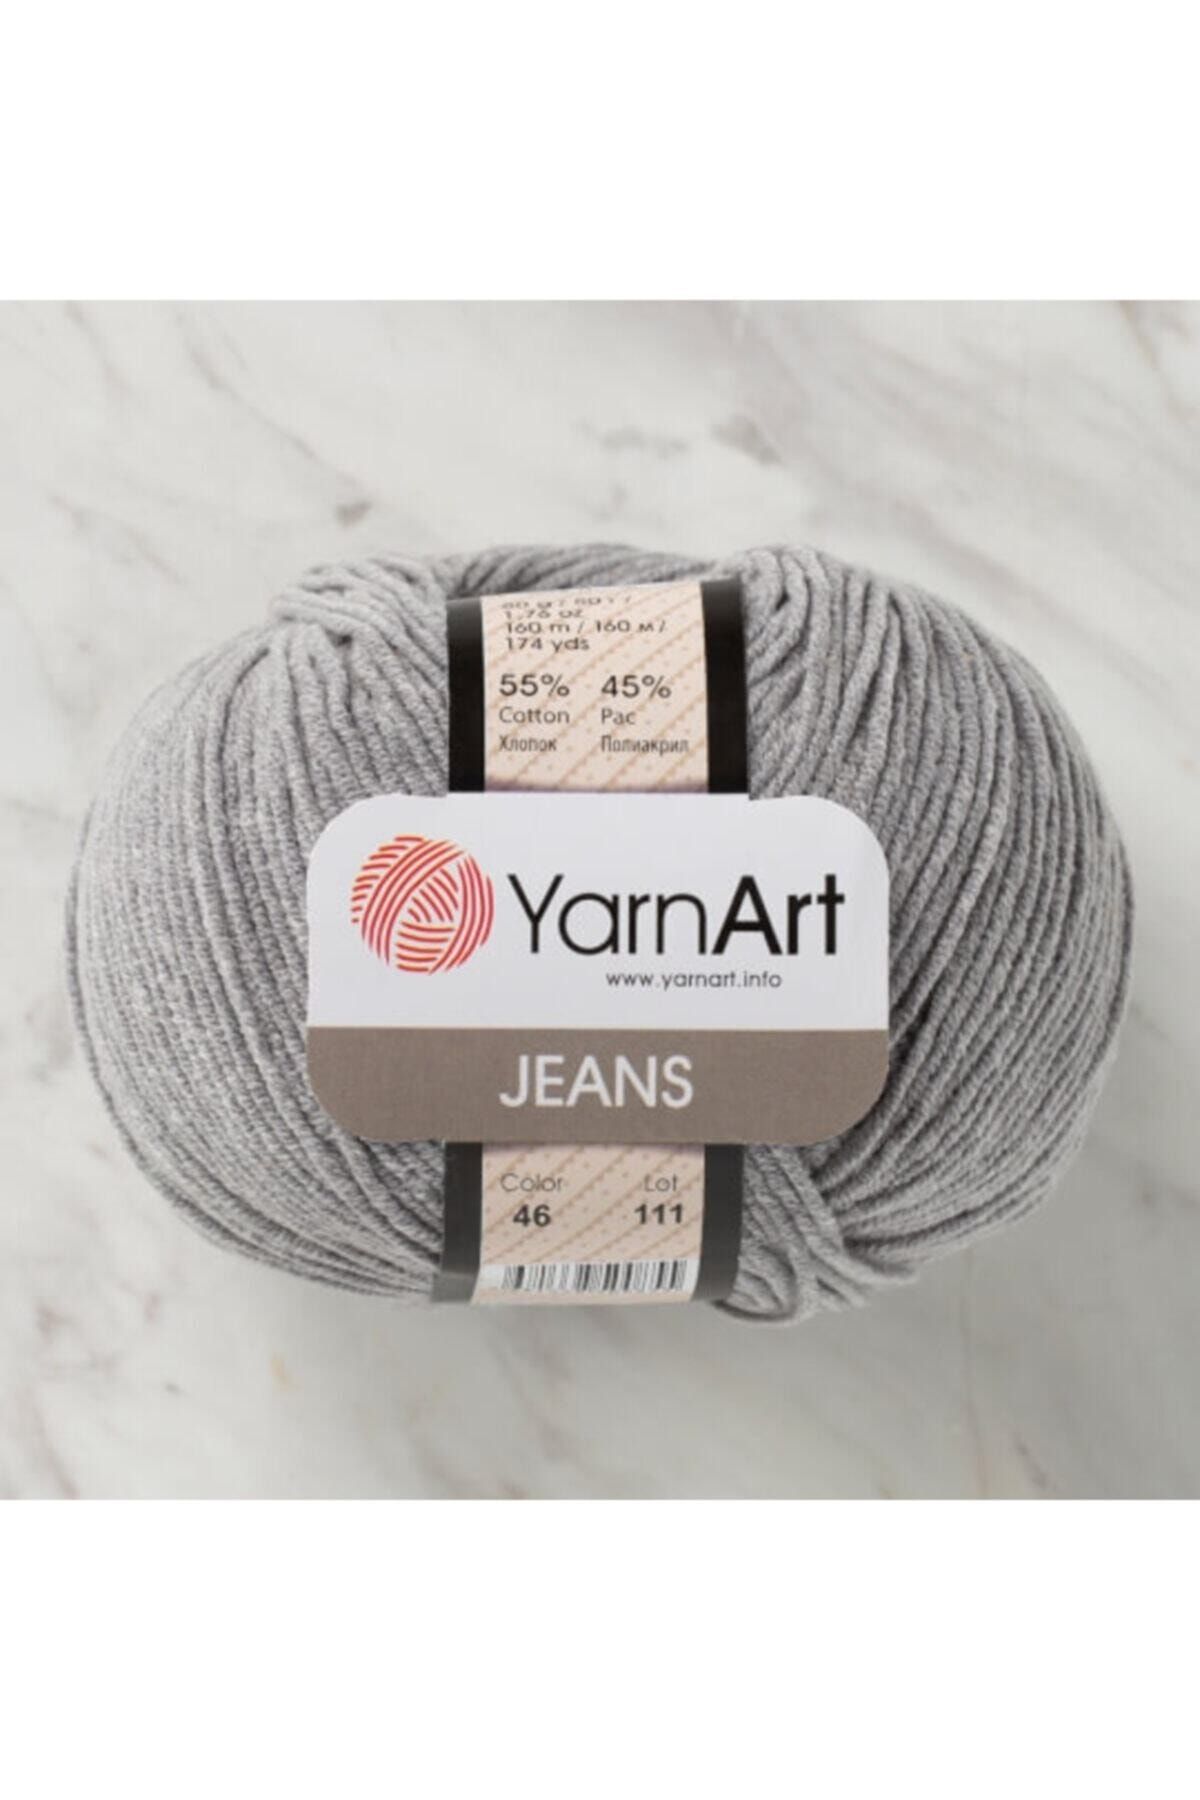 Yarnart Yarn Art Jeans 46